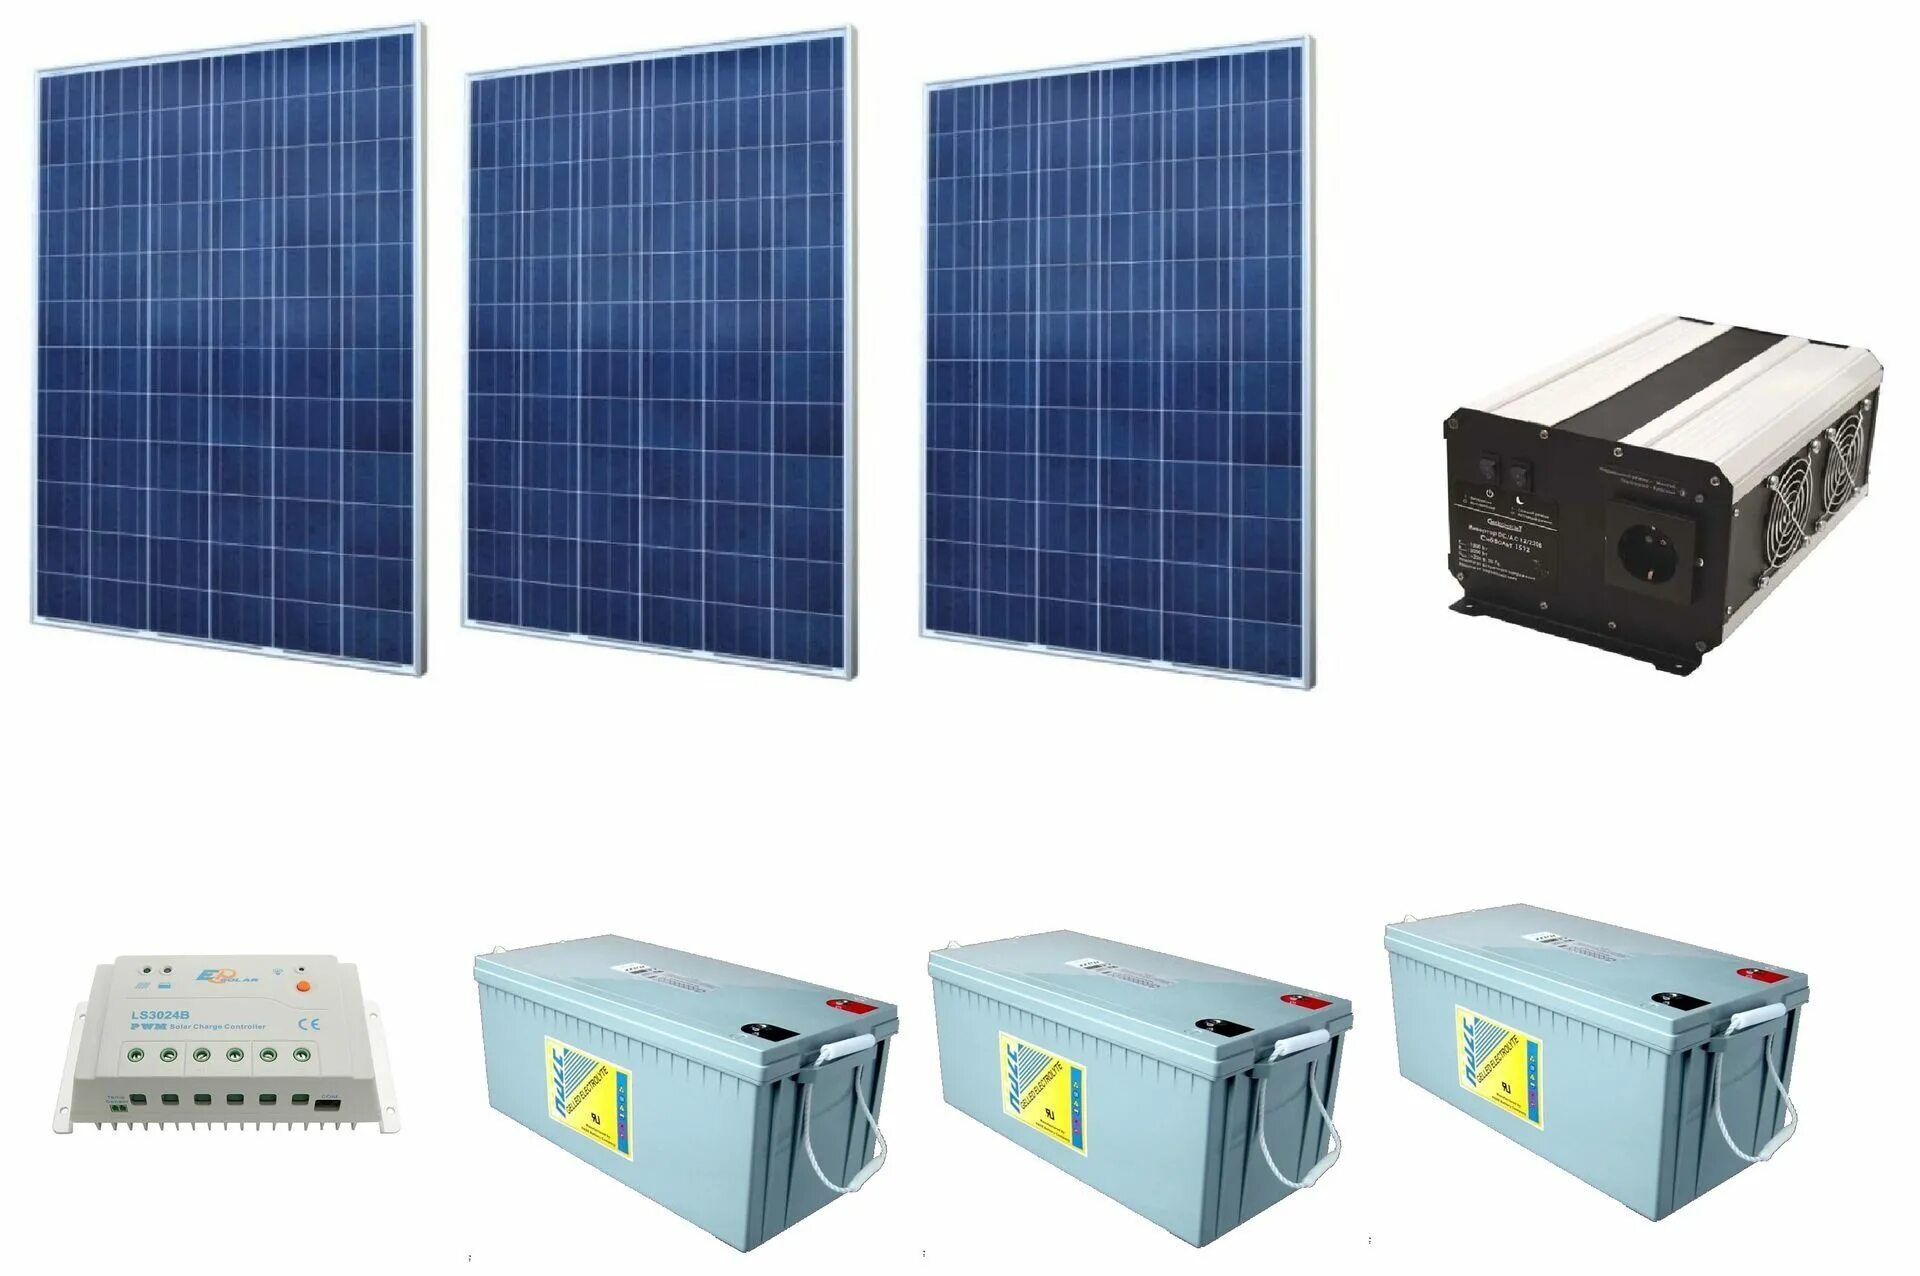 Аккумуляторные батареи для подстанции 100 КВТ для солнечной панели. Солнечная батарея на 220 вольт. Солнечный панель 5 кв. Аккумулятор на 220 вольт для солнечной панели. Комплект солнечной батареи с аккумулятором